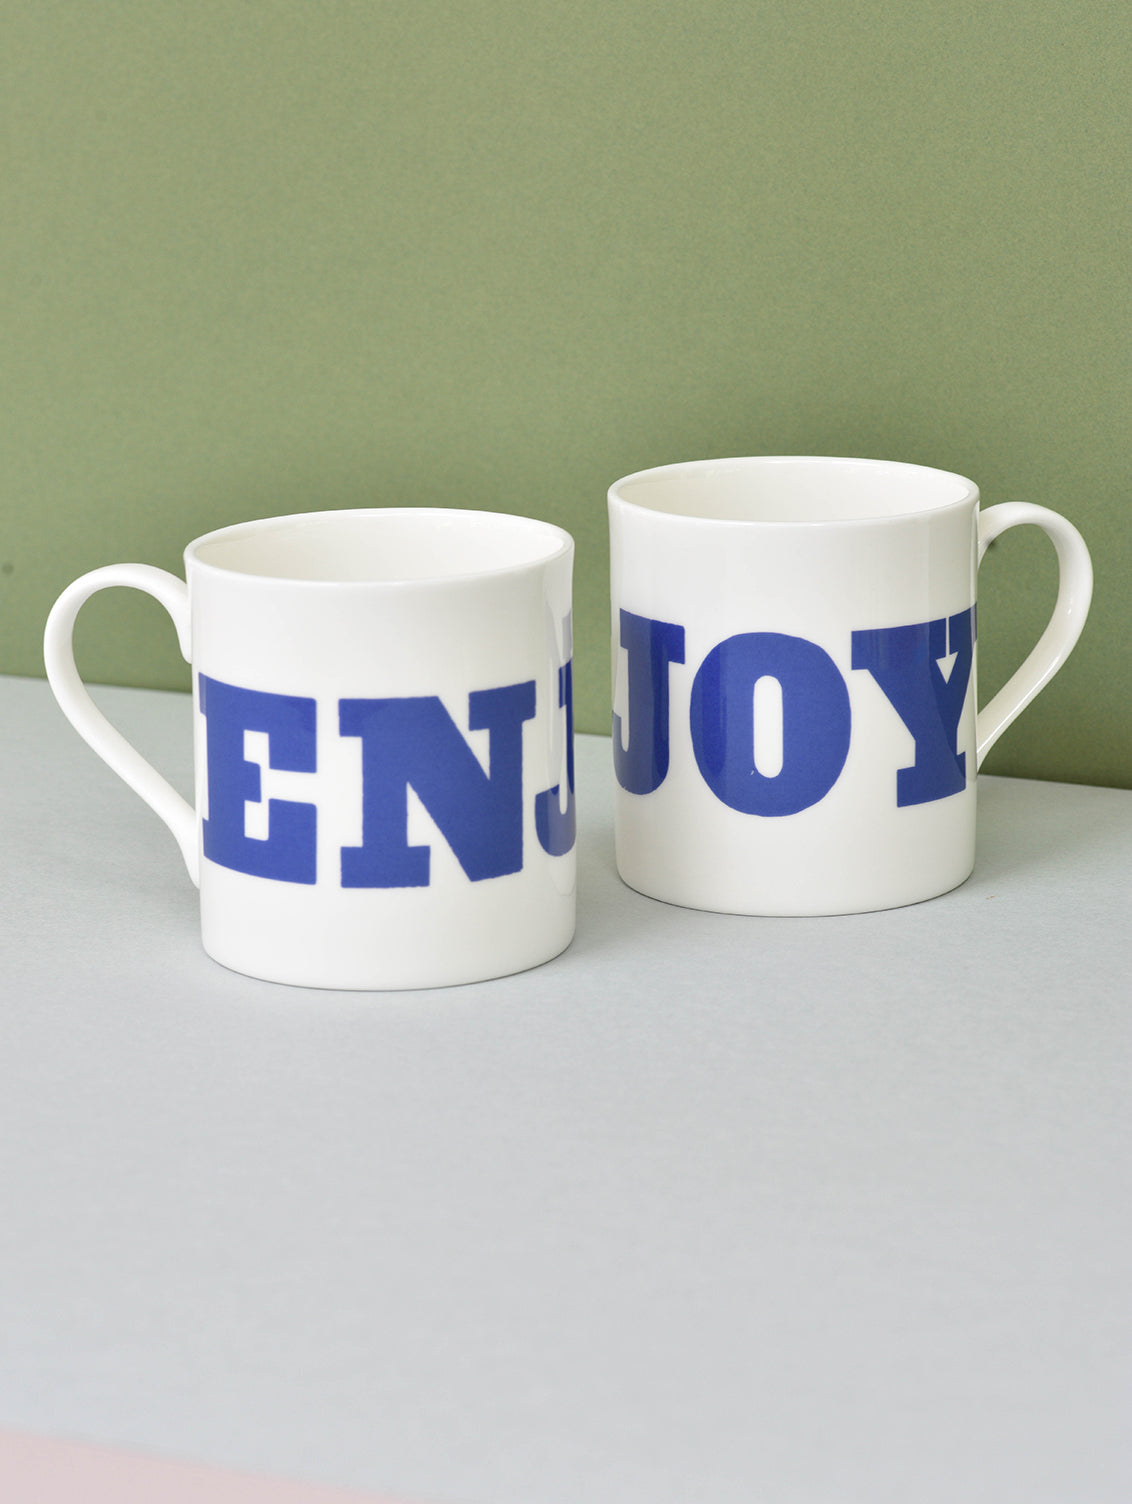 Pair of Enjoy mugs